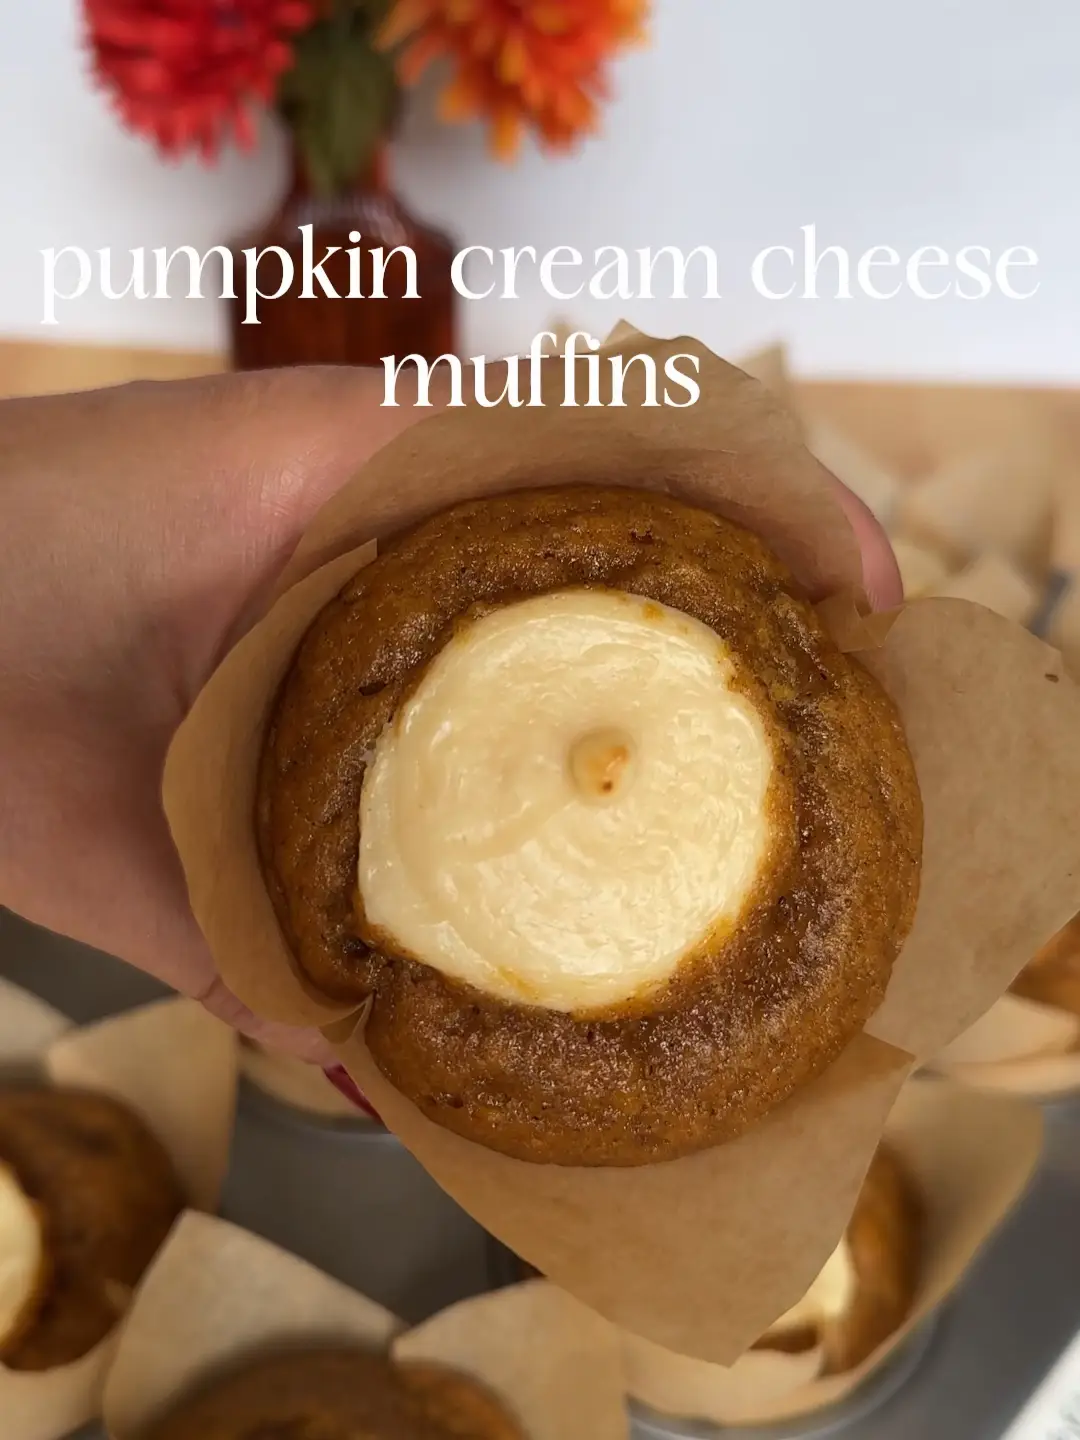 Pumpkin Jumbo Muffins - The Dizzy Cook